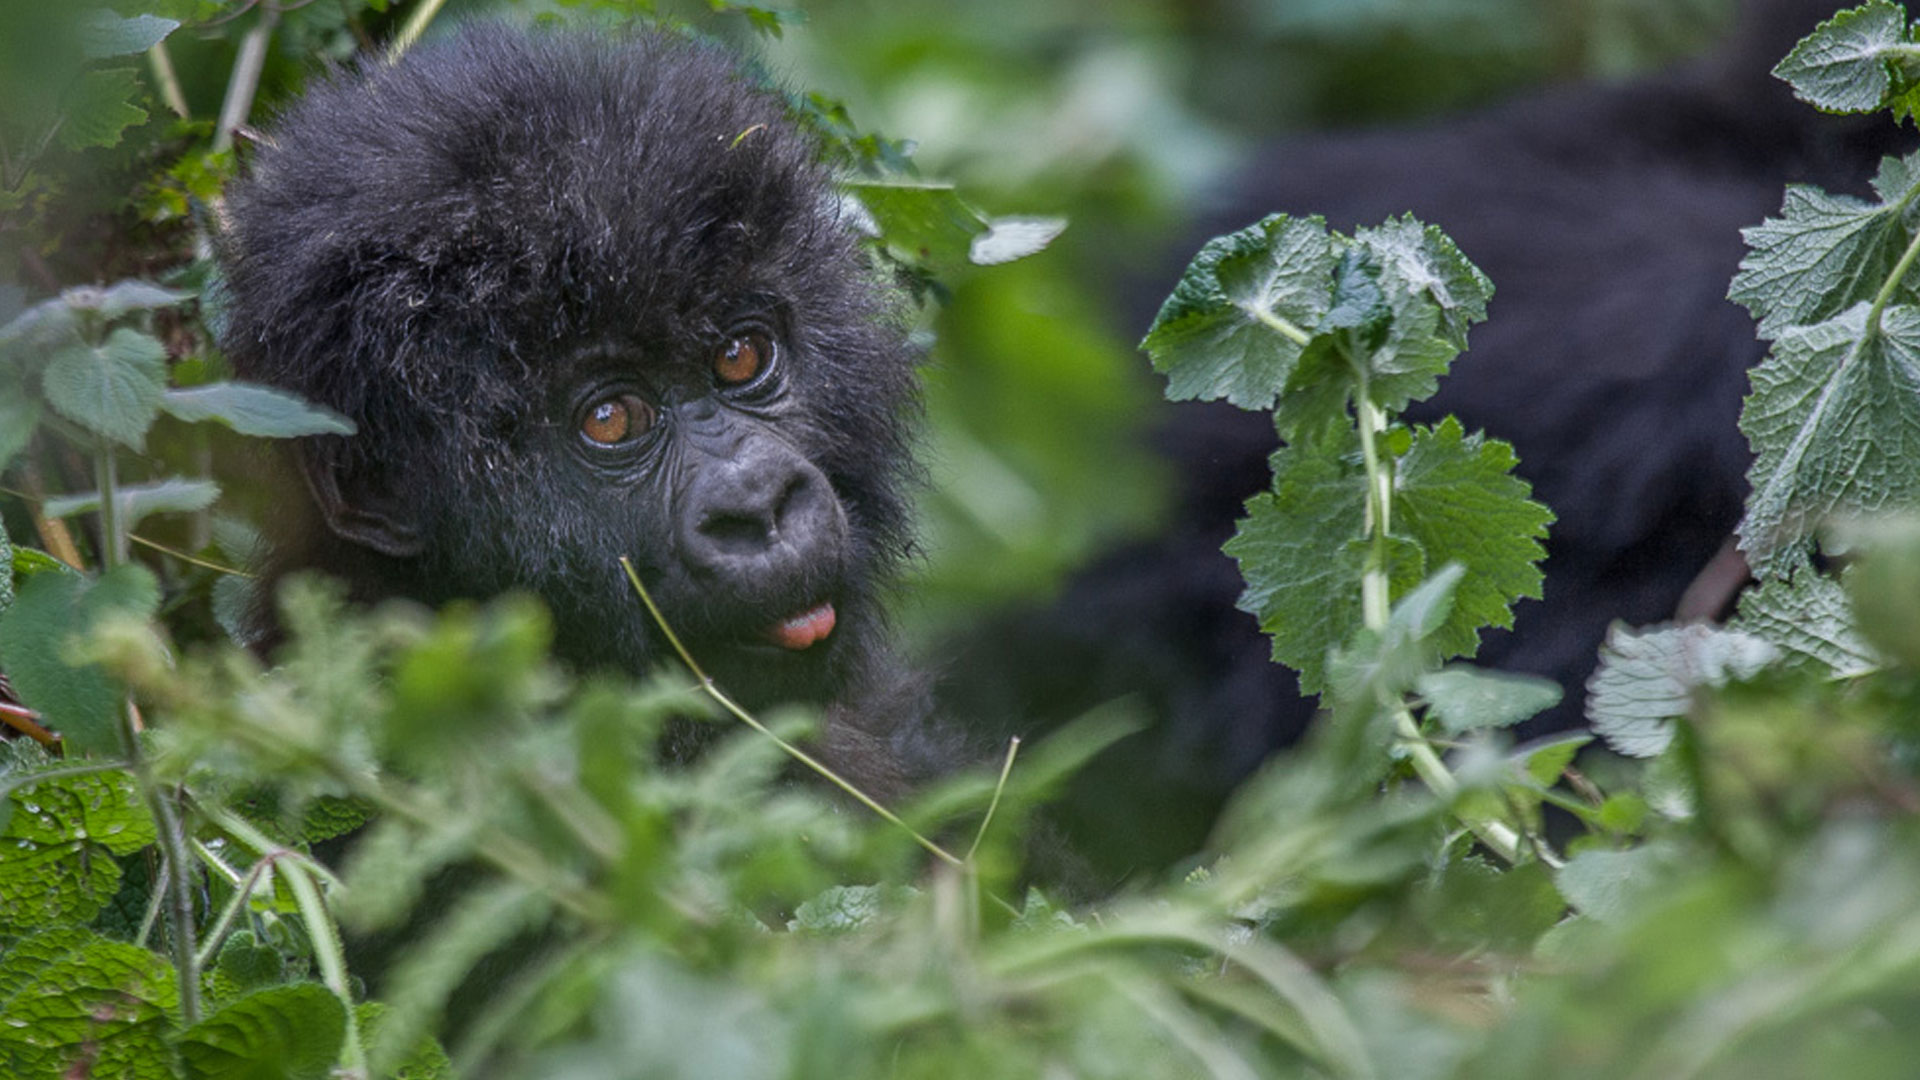 Gorilla Tracking in Rwanda